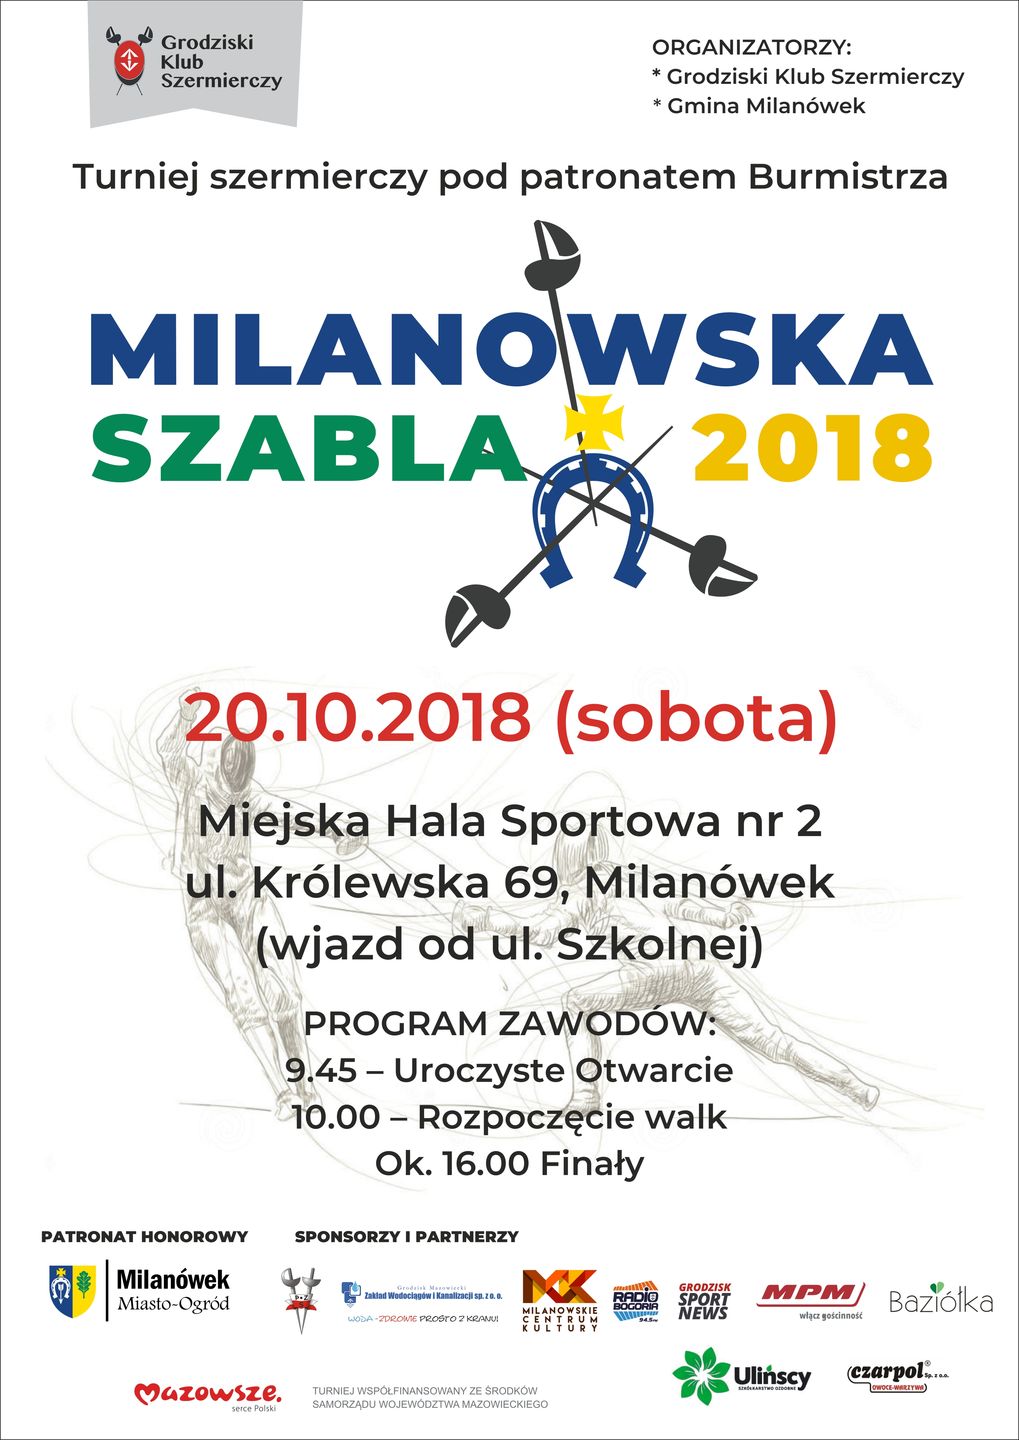 Plakat promujący wydarzenie "Milanowska Szabla 2018"